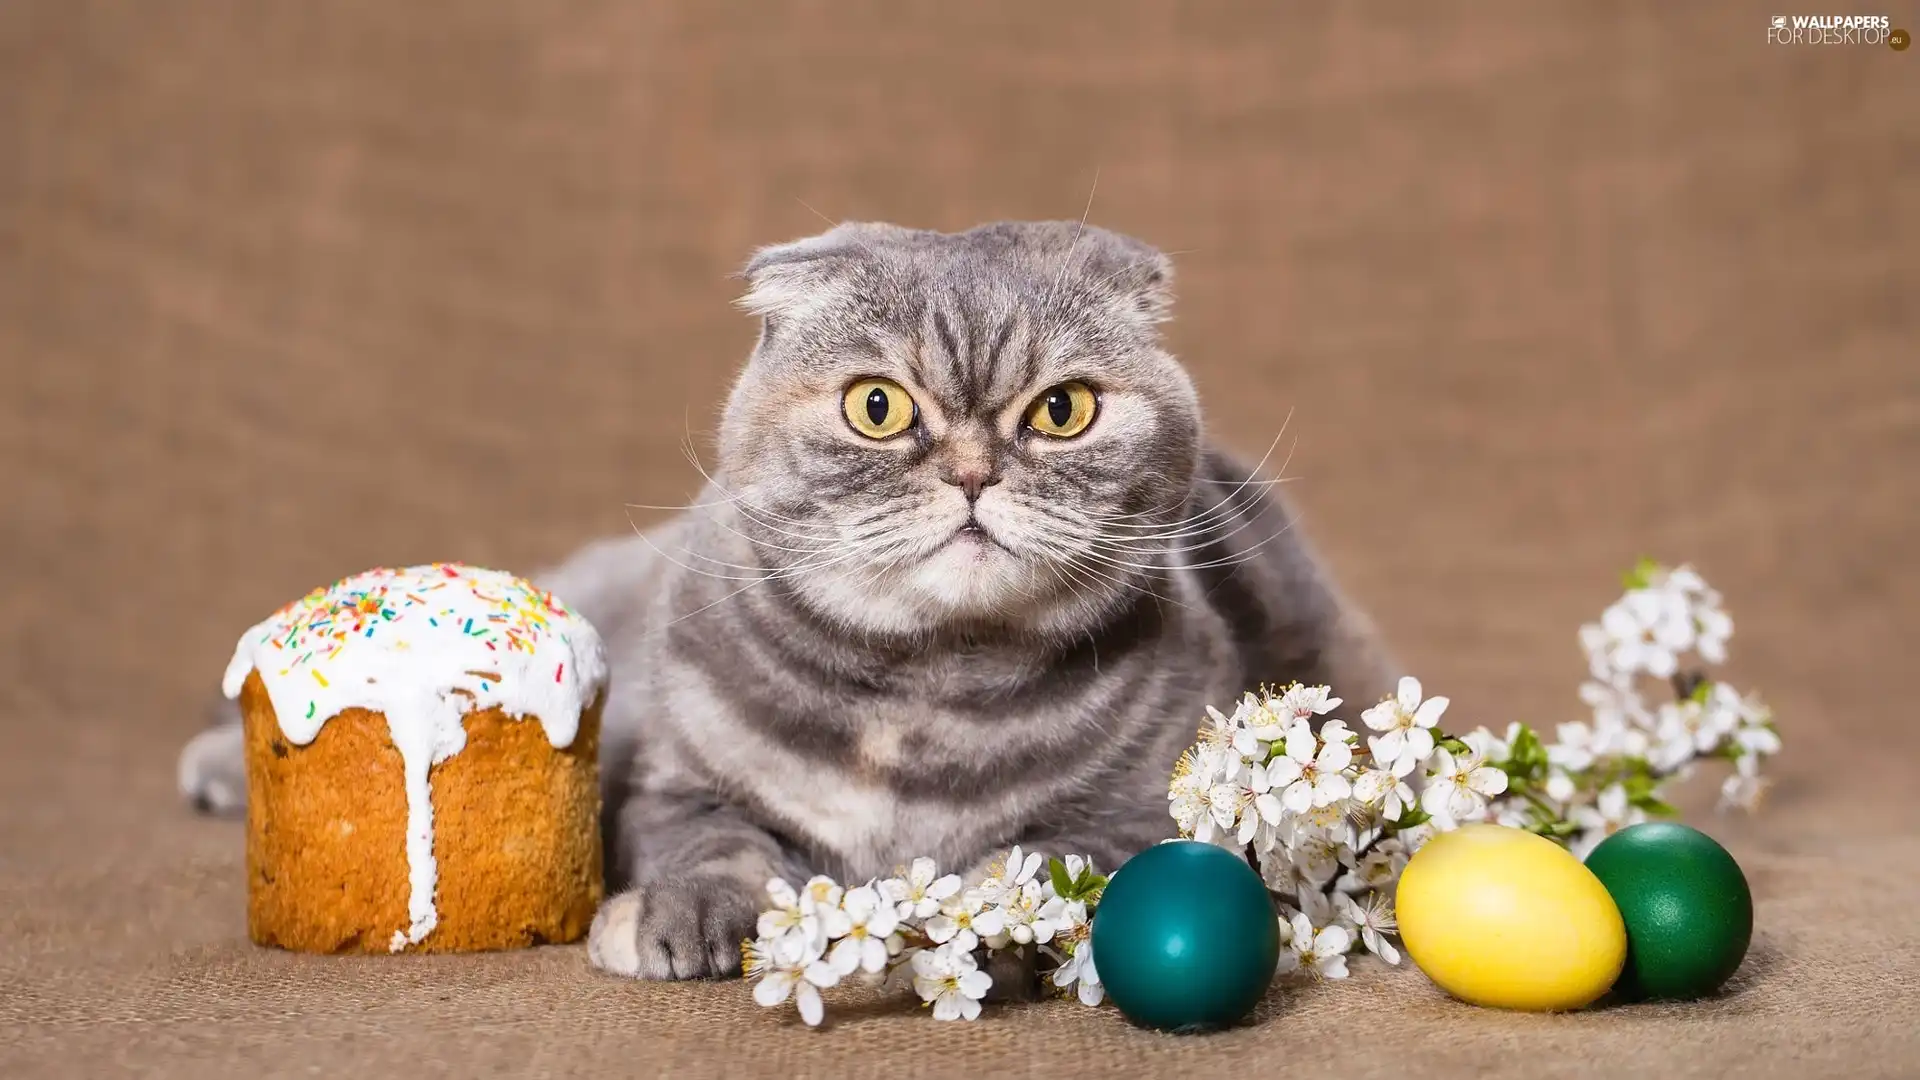 Scottish Fold Cat, Easter Cake, Easter, eggs